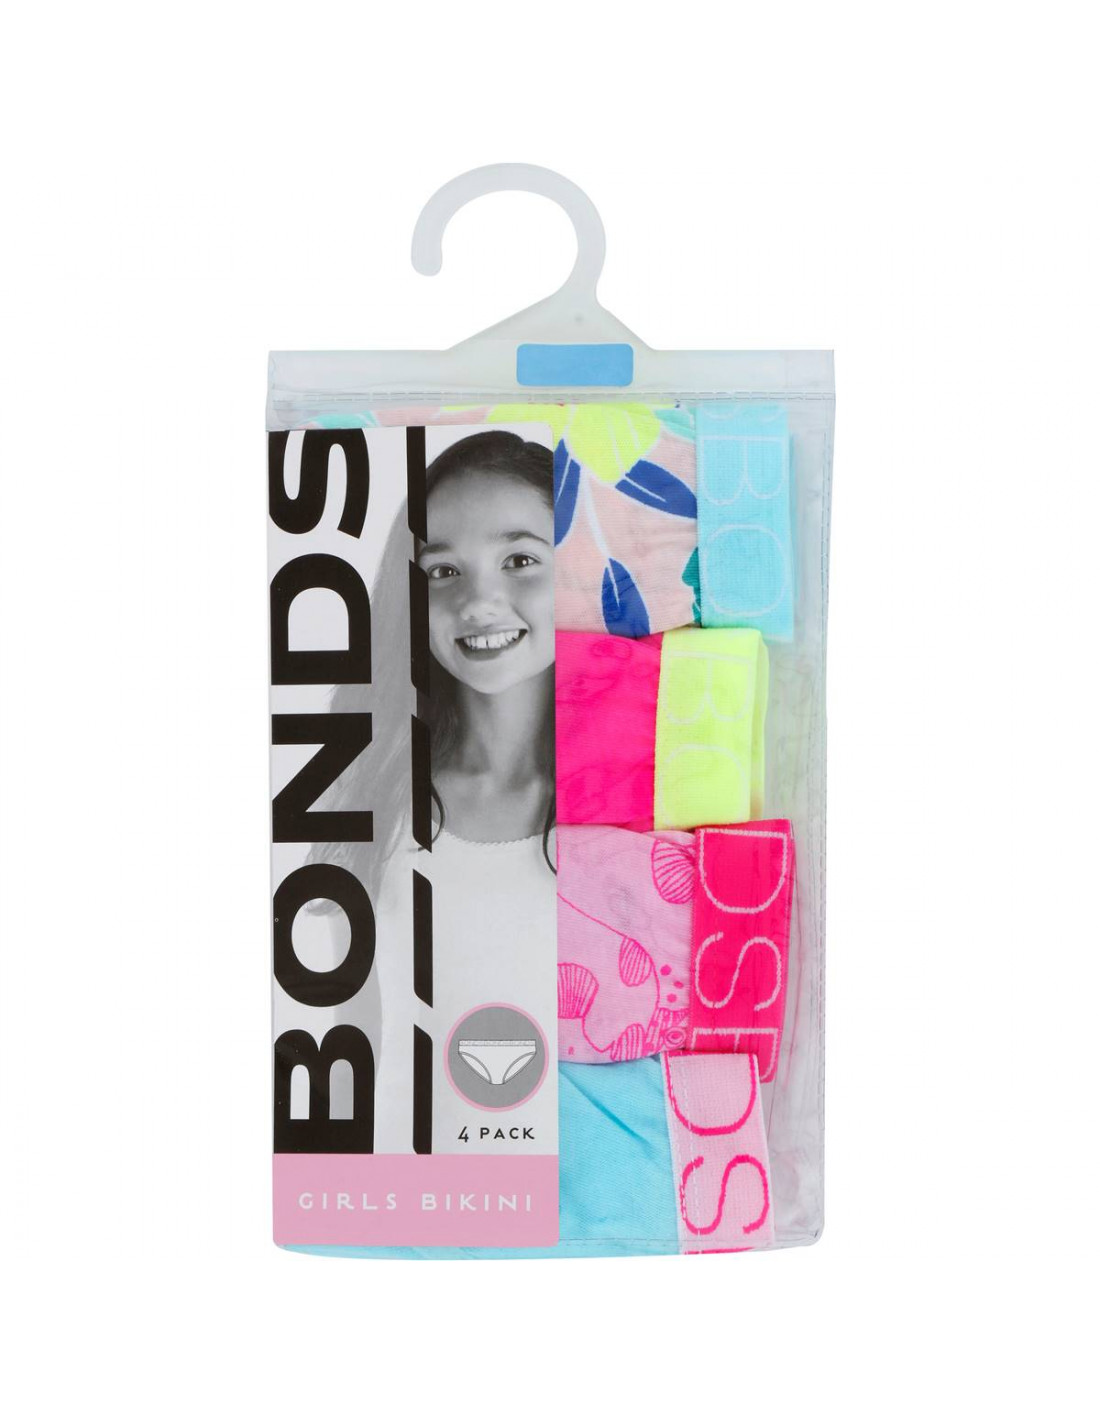 Bonds Girls Hot Wheels 4 Pack Briefs Underwear sizes 2 3 4 6 8 10 12 Multi